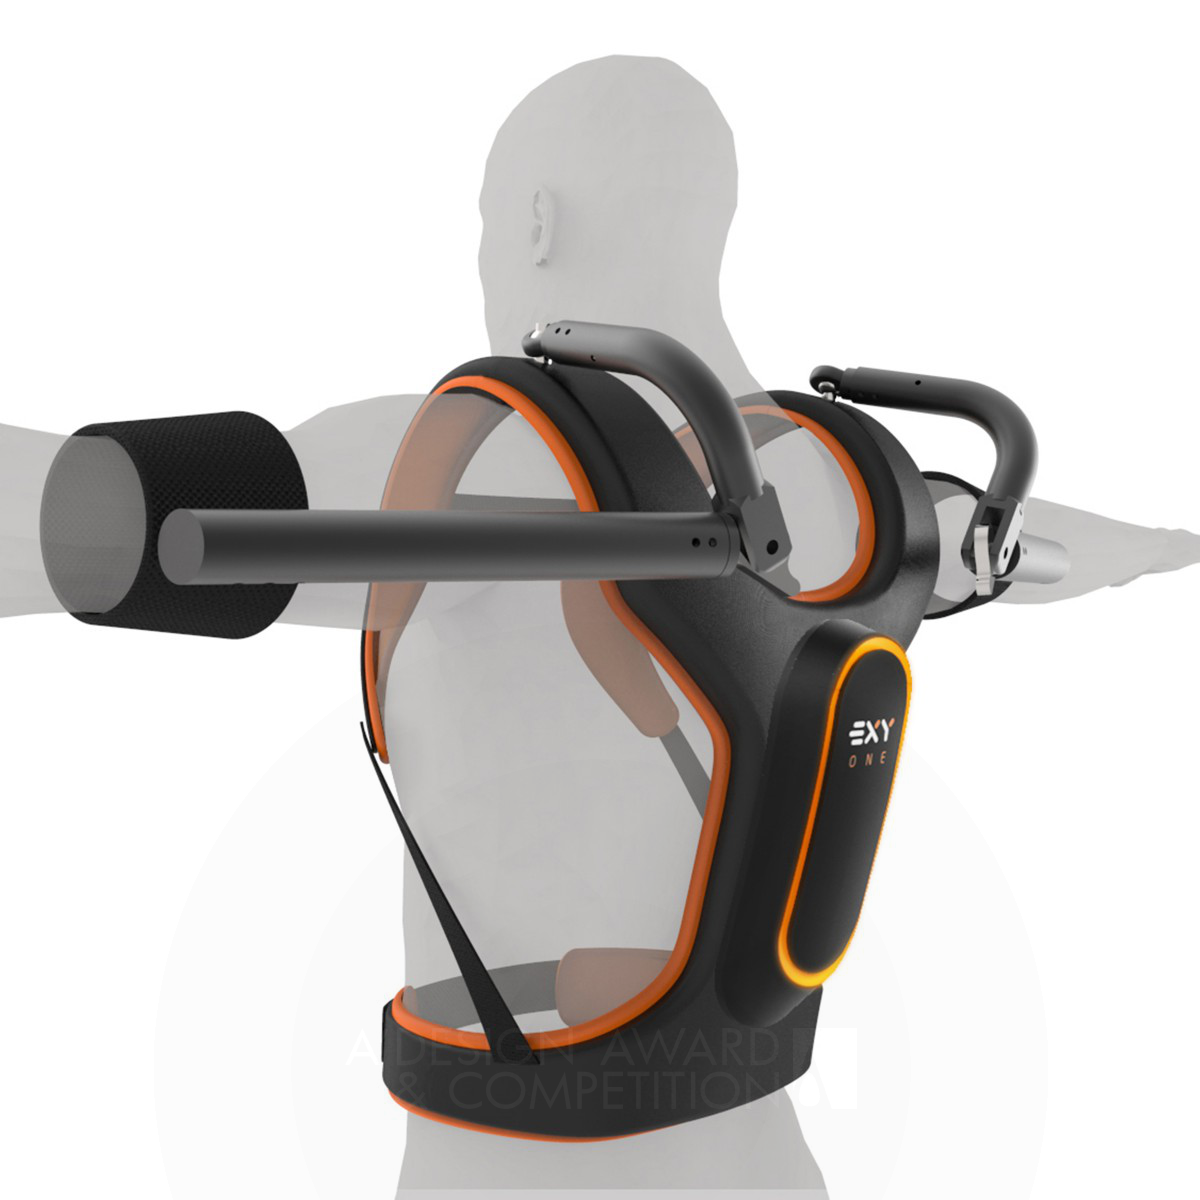 ARBO design Wearable Exoskeleton